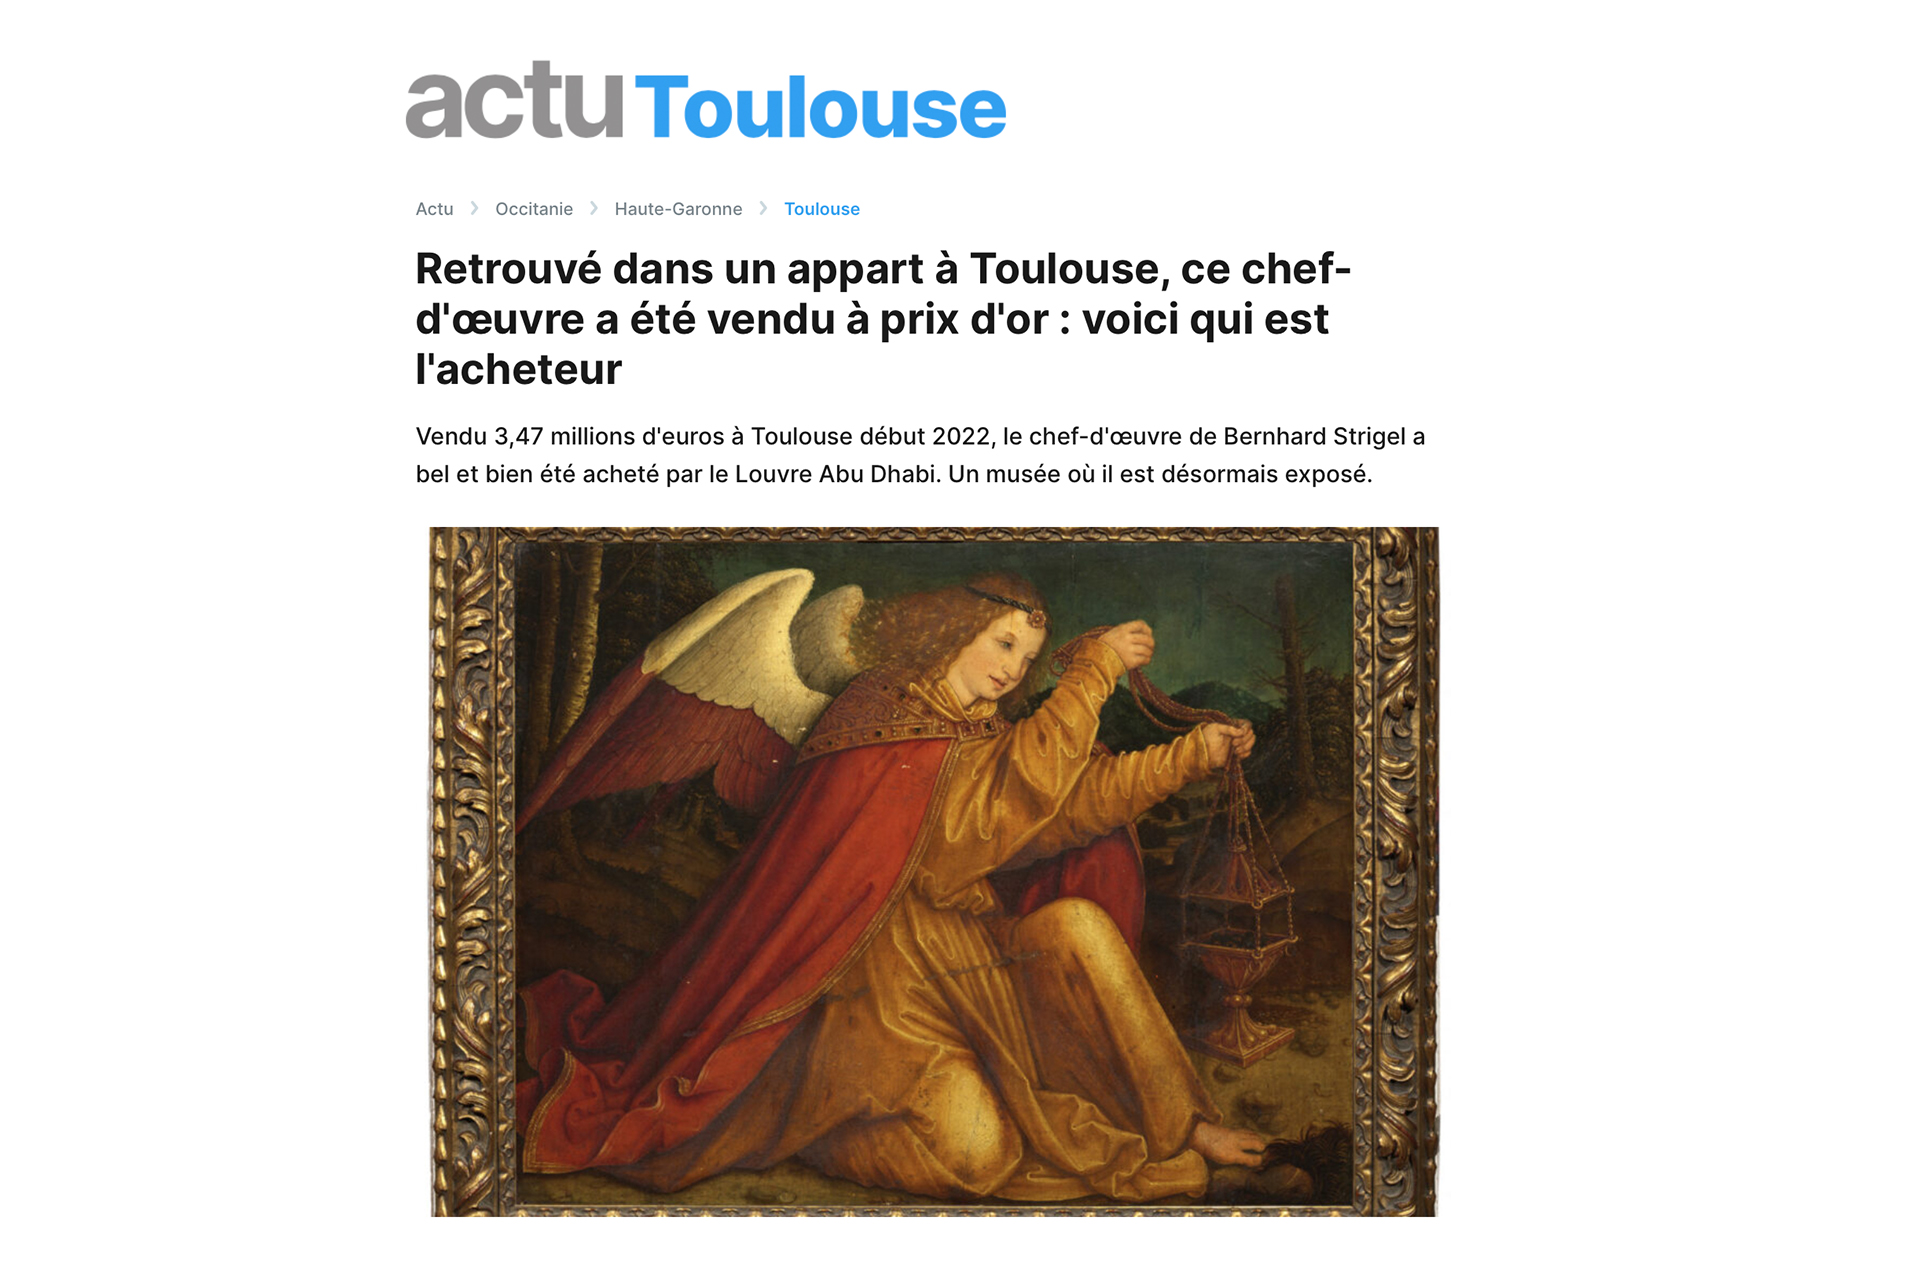 « Retrouvé dans un appart à Toulouse, vendu à prix d’or : voici qui est l’acheteur », 29 décembre 2022